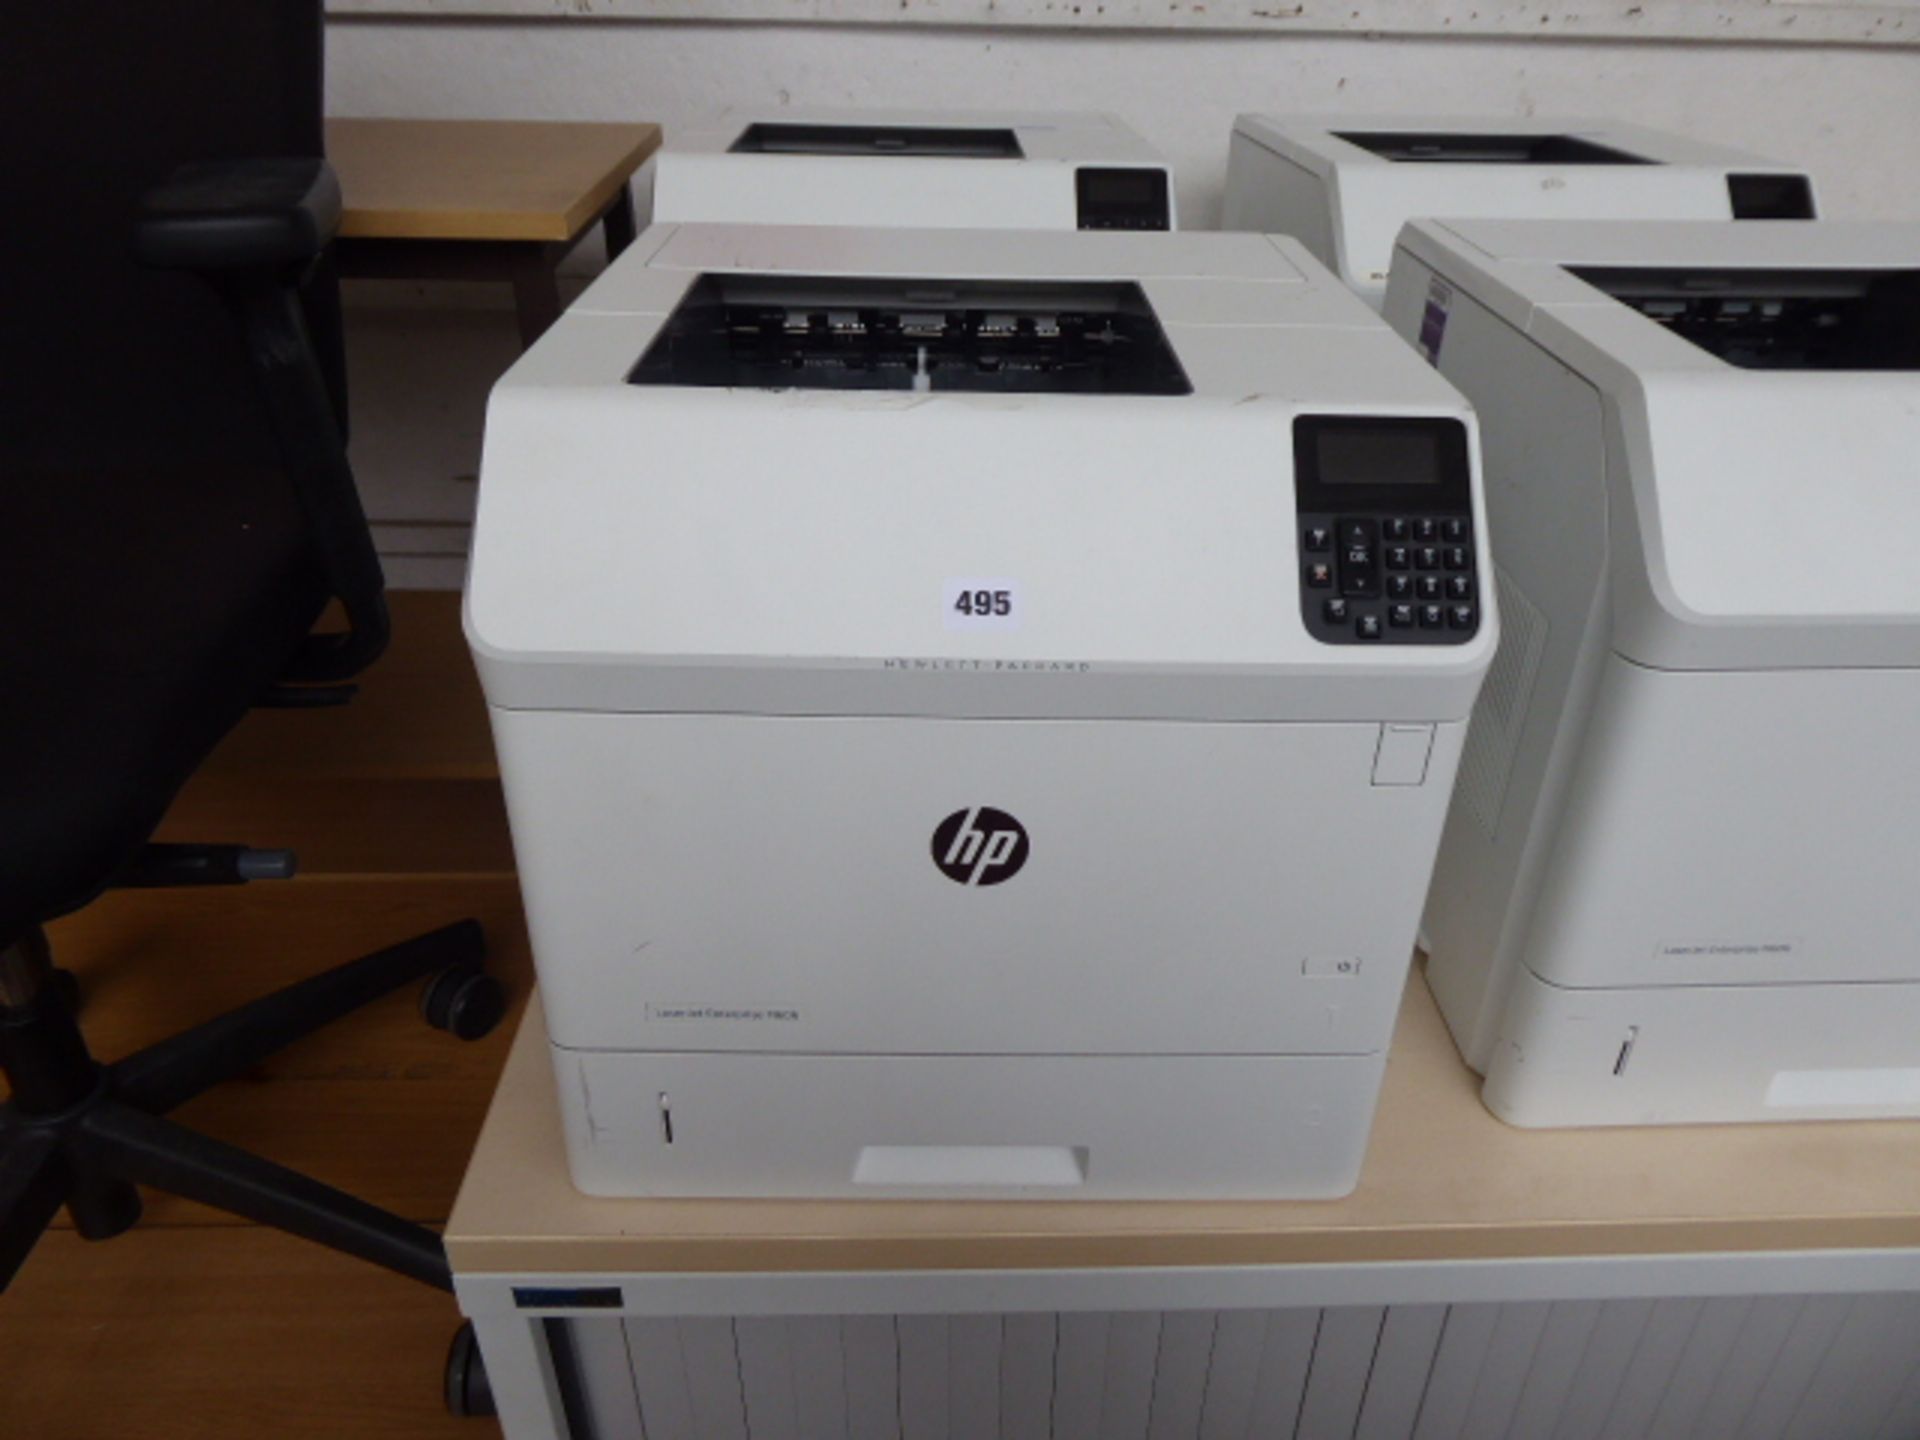 2 HP LaserJet Enterprise M606 printers